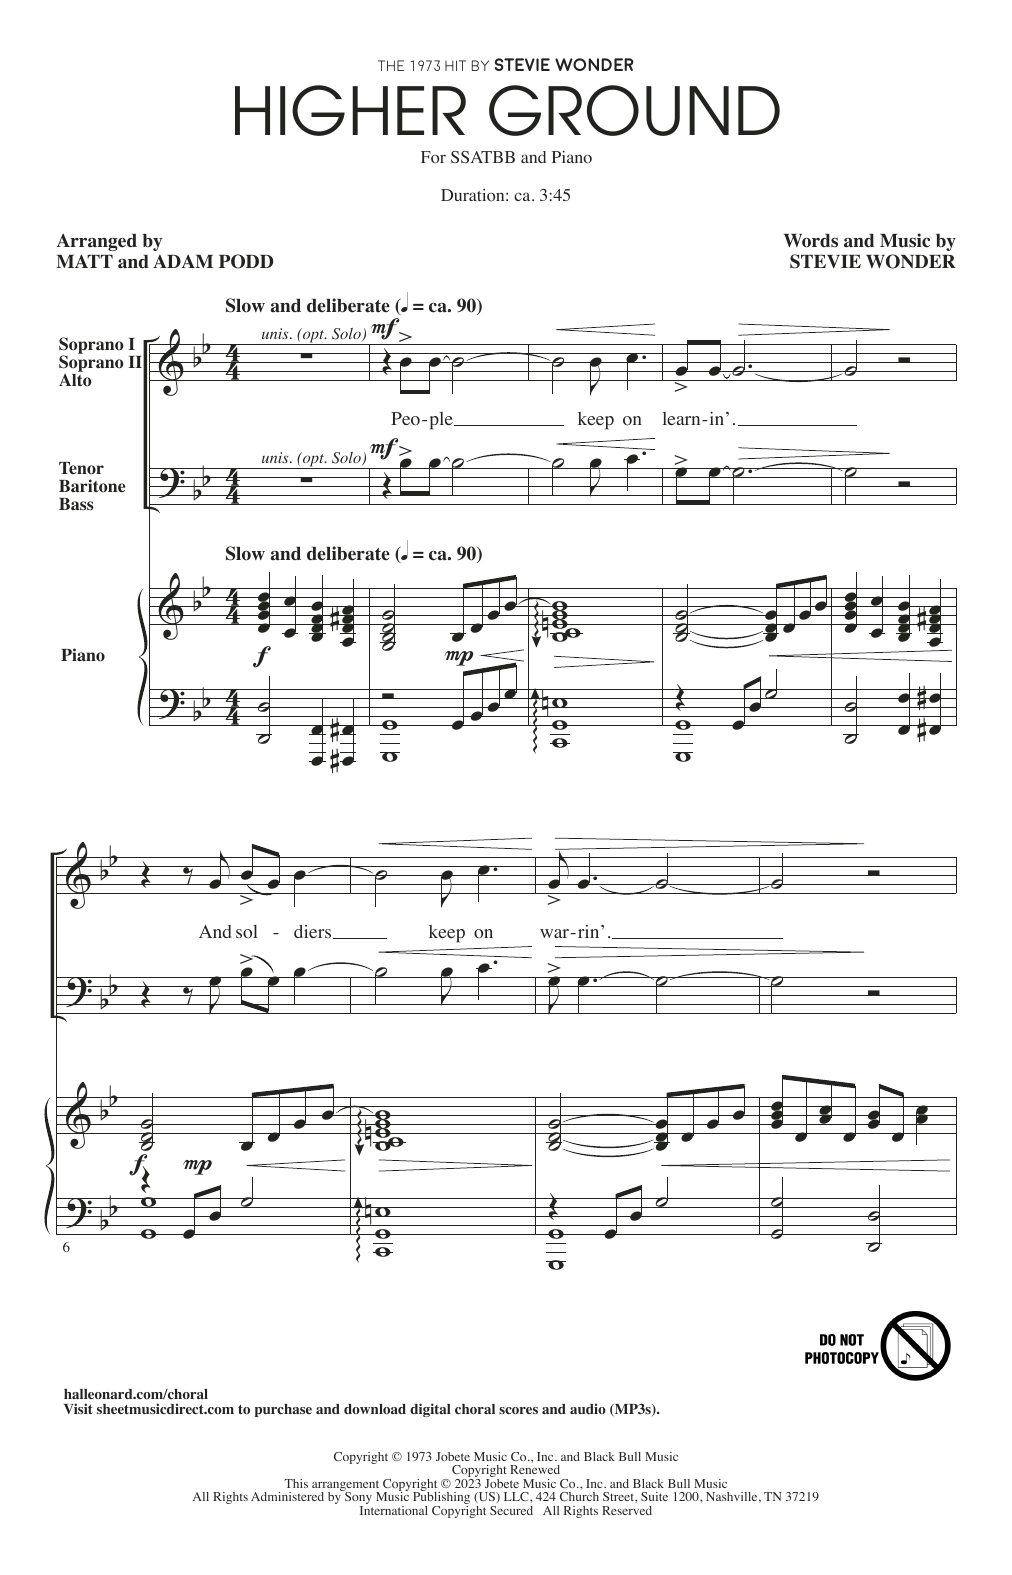 Stevie Wonder Higher Ground (arr. Matt and Adam Podd) sheet music notes and chords arranged for SSATBB Choir